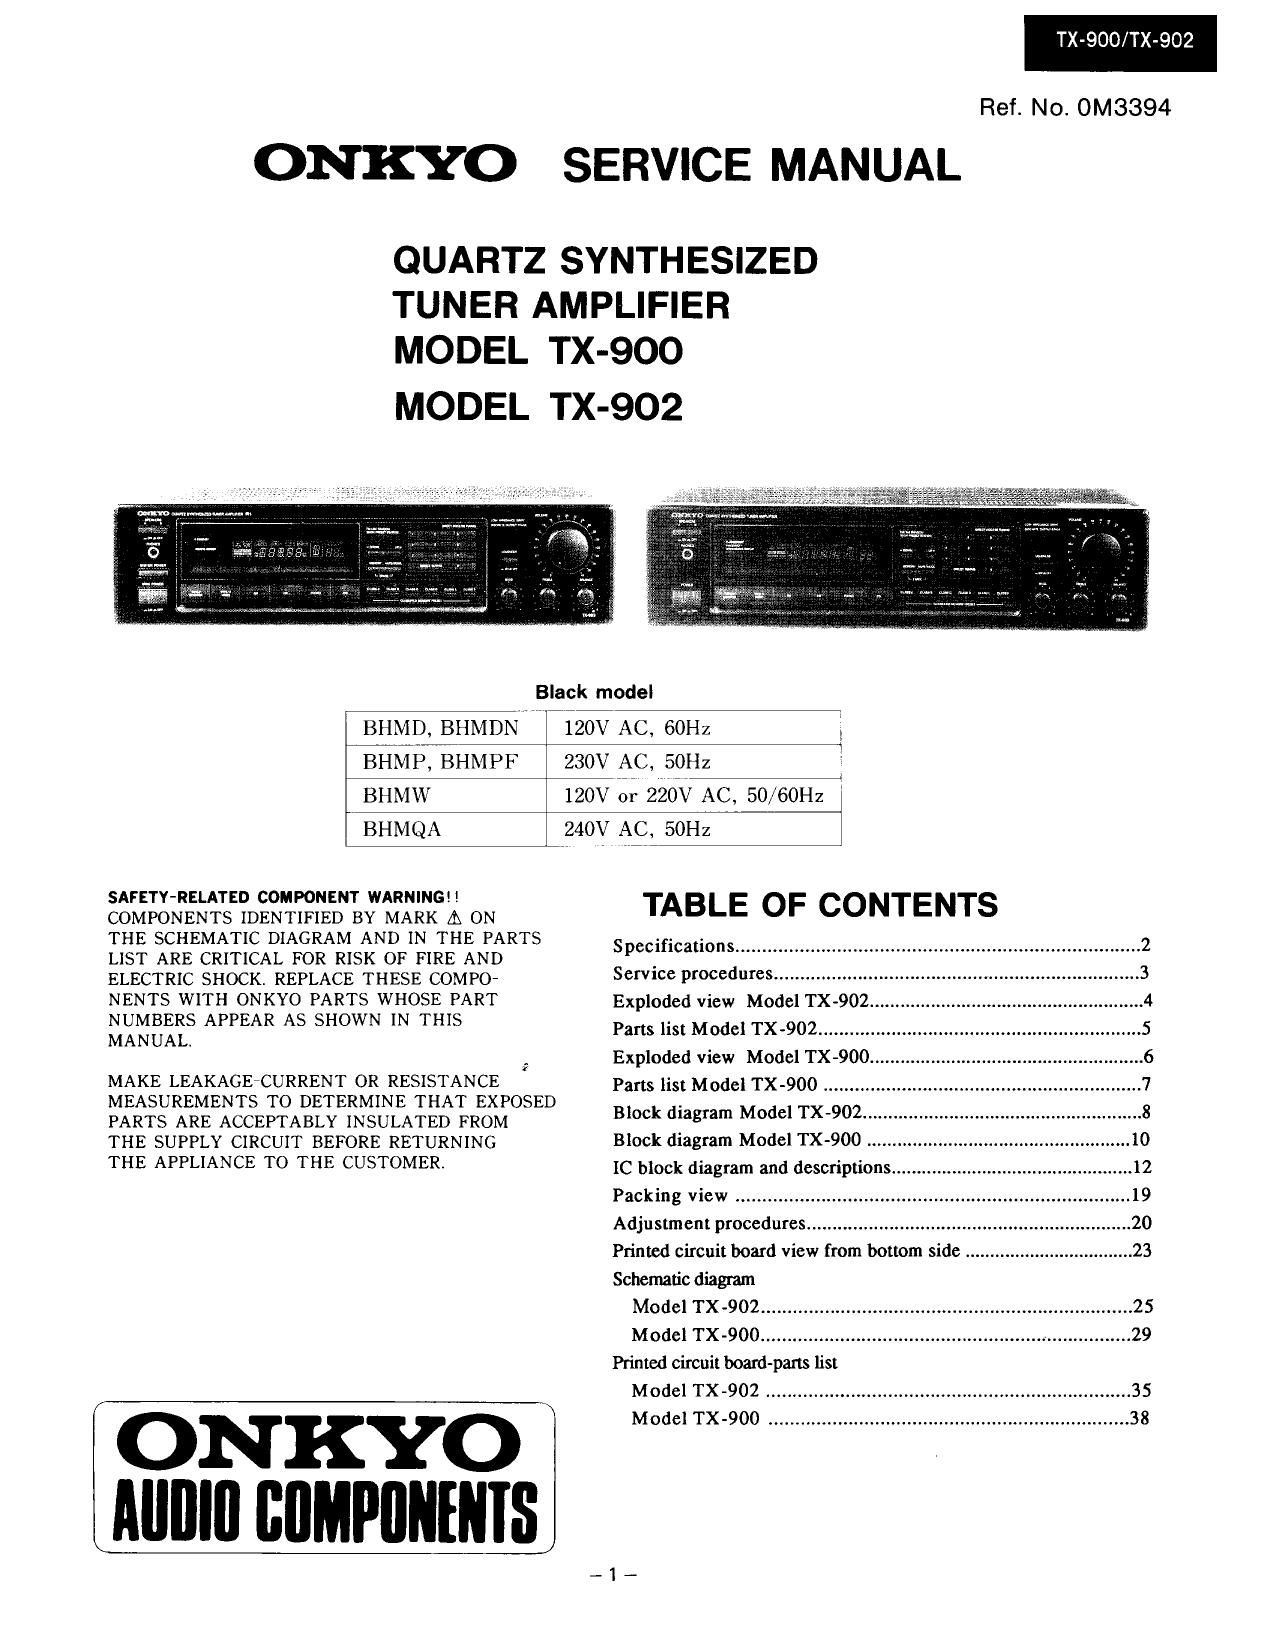 Onkyo TX 900 Service Manual